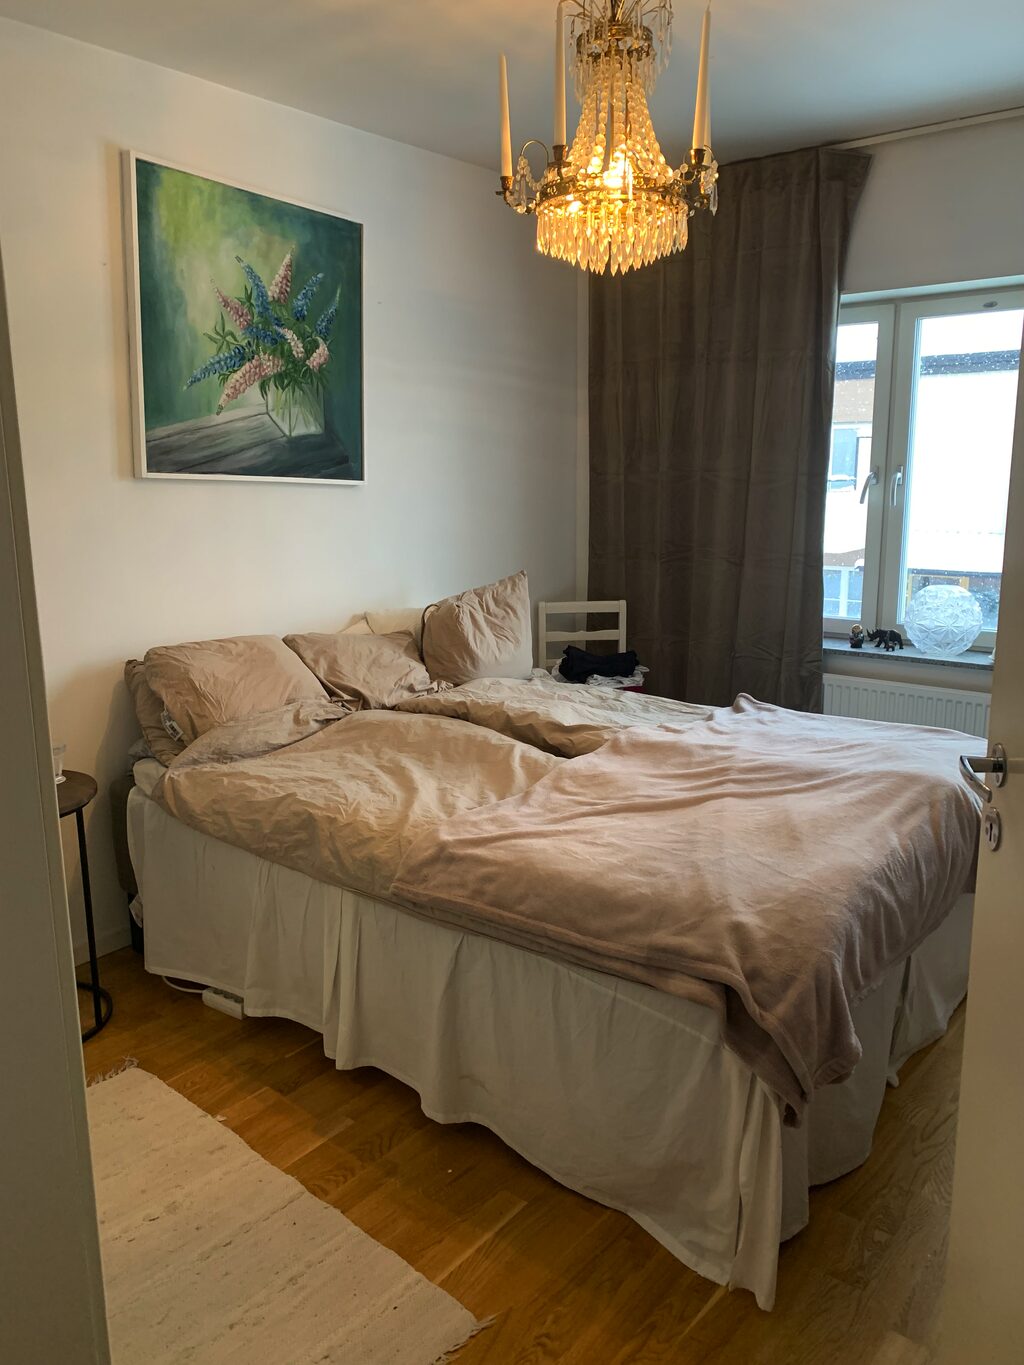 Lägenhetsbyte - Kvarnängsgatan 5, 754 20 Uppsala